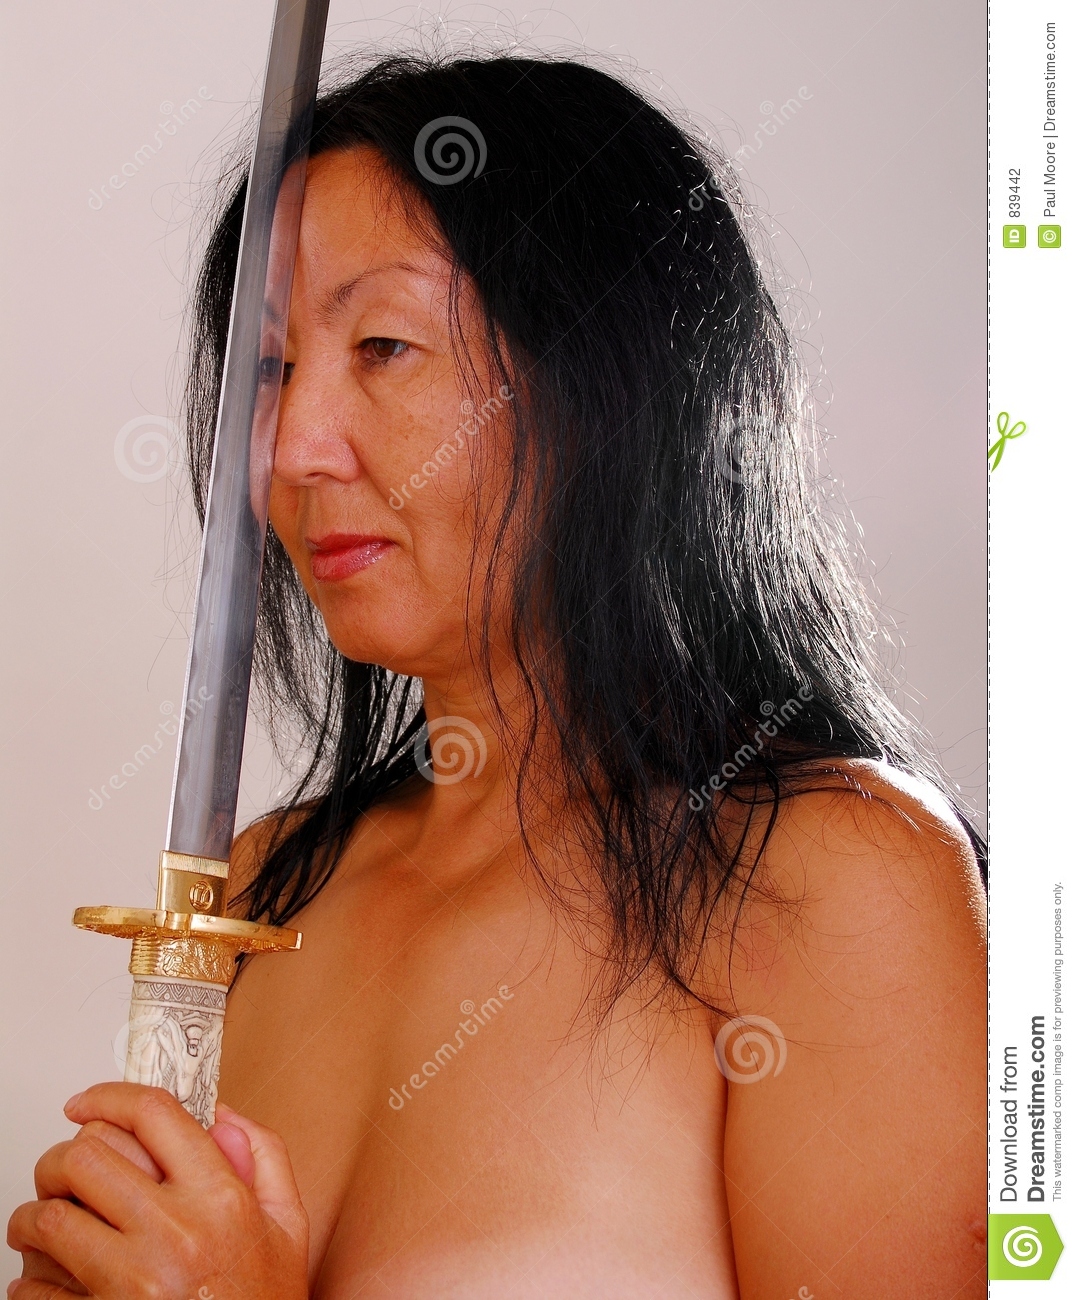 1077px x 1300px - Nude asian older women - XXX photo